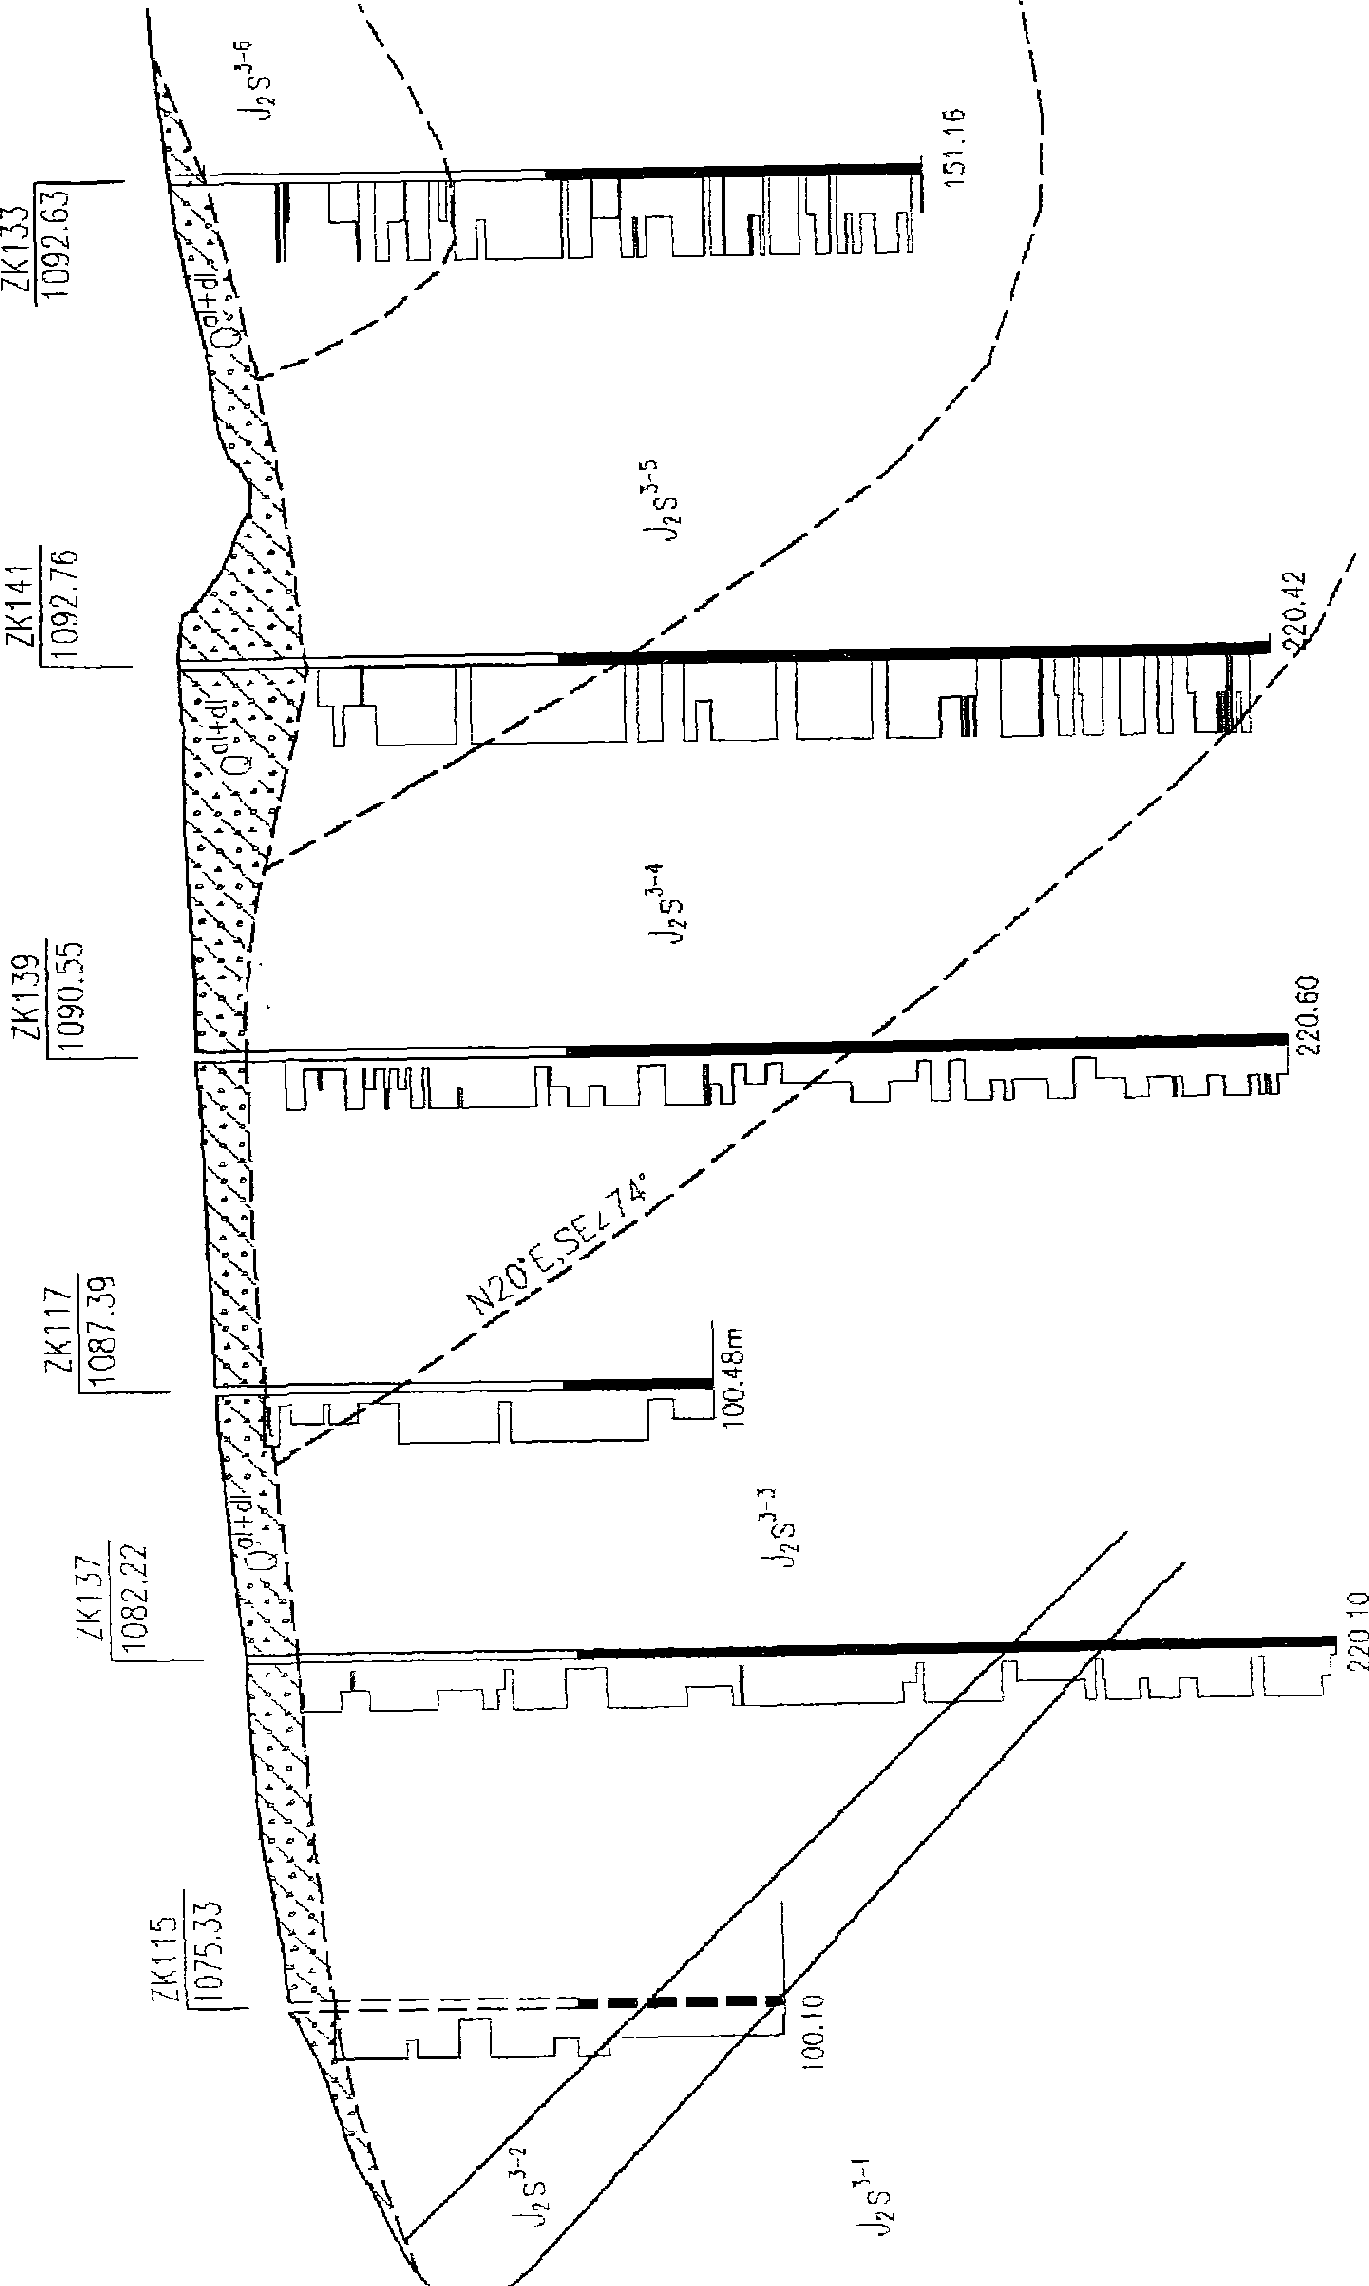 Lithologic delamination method for complex layered dam base